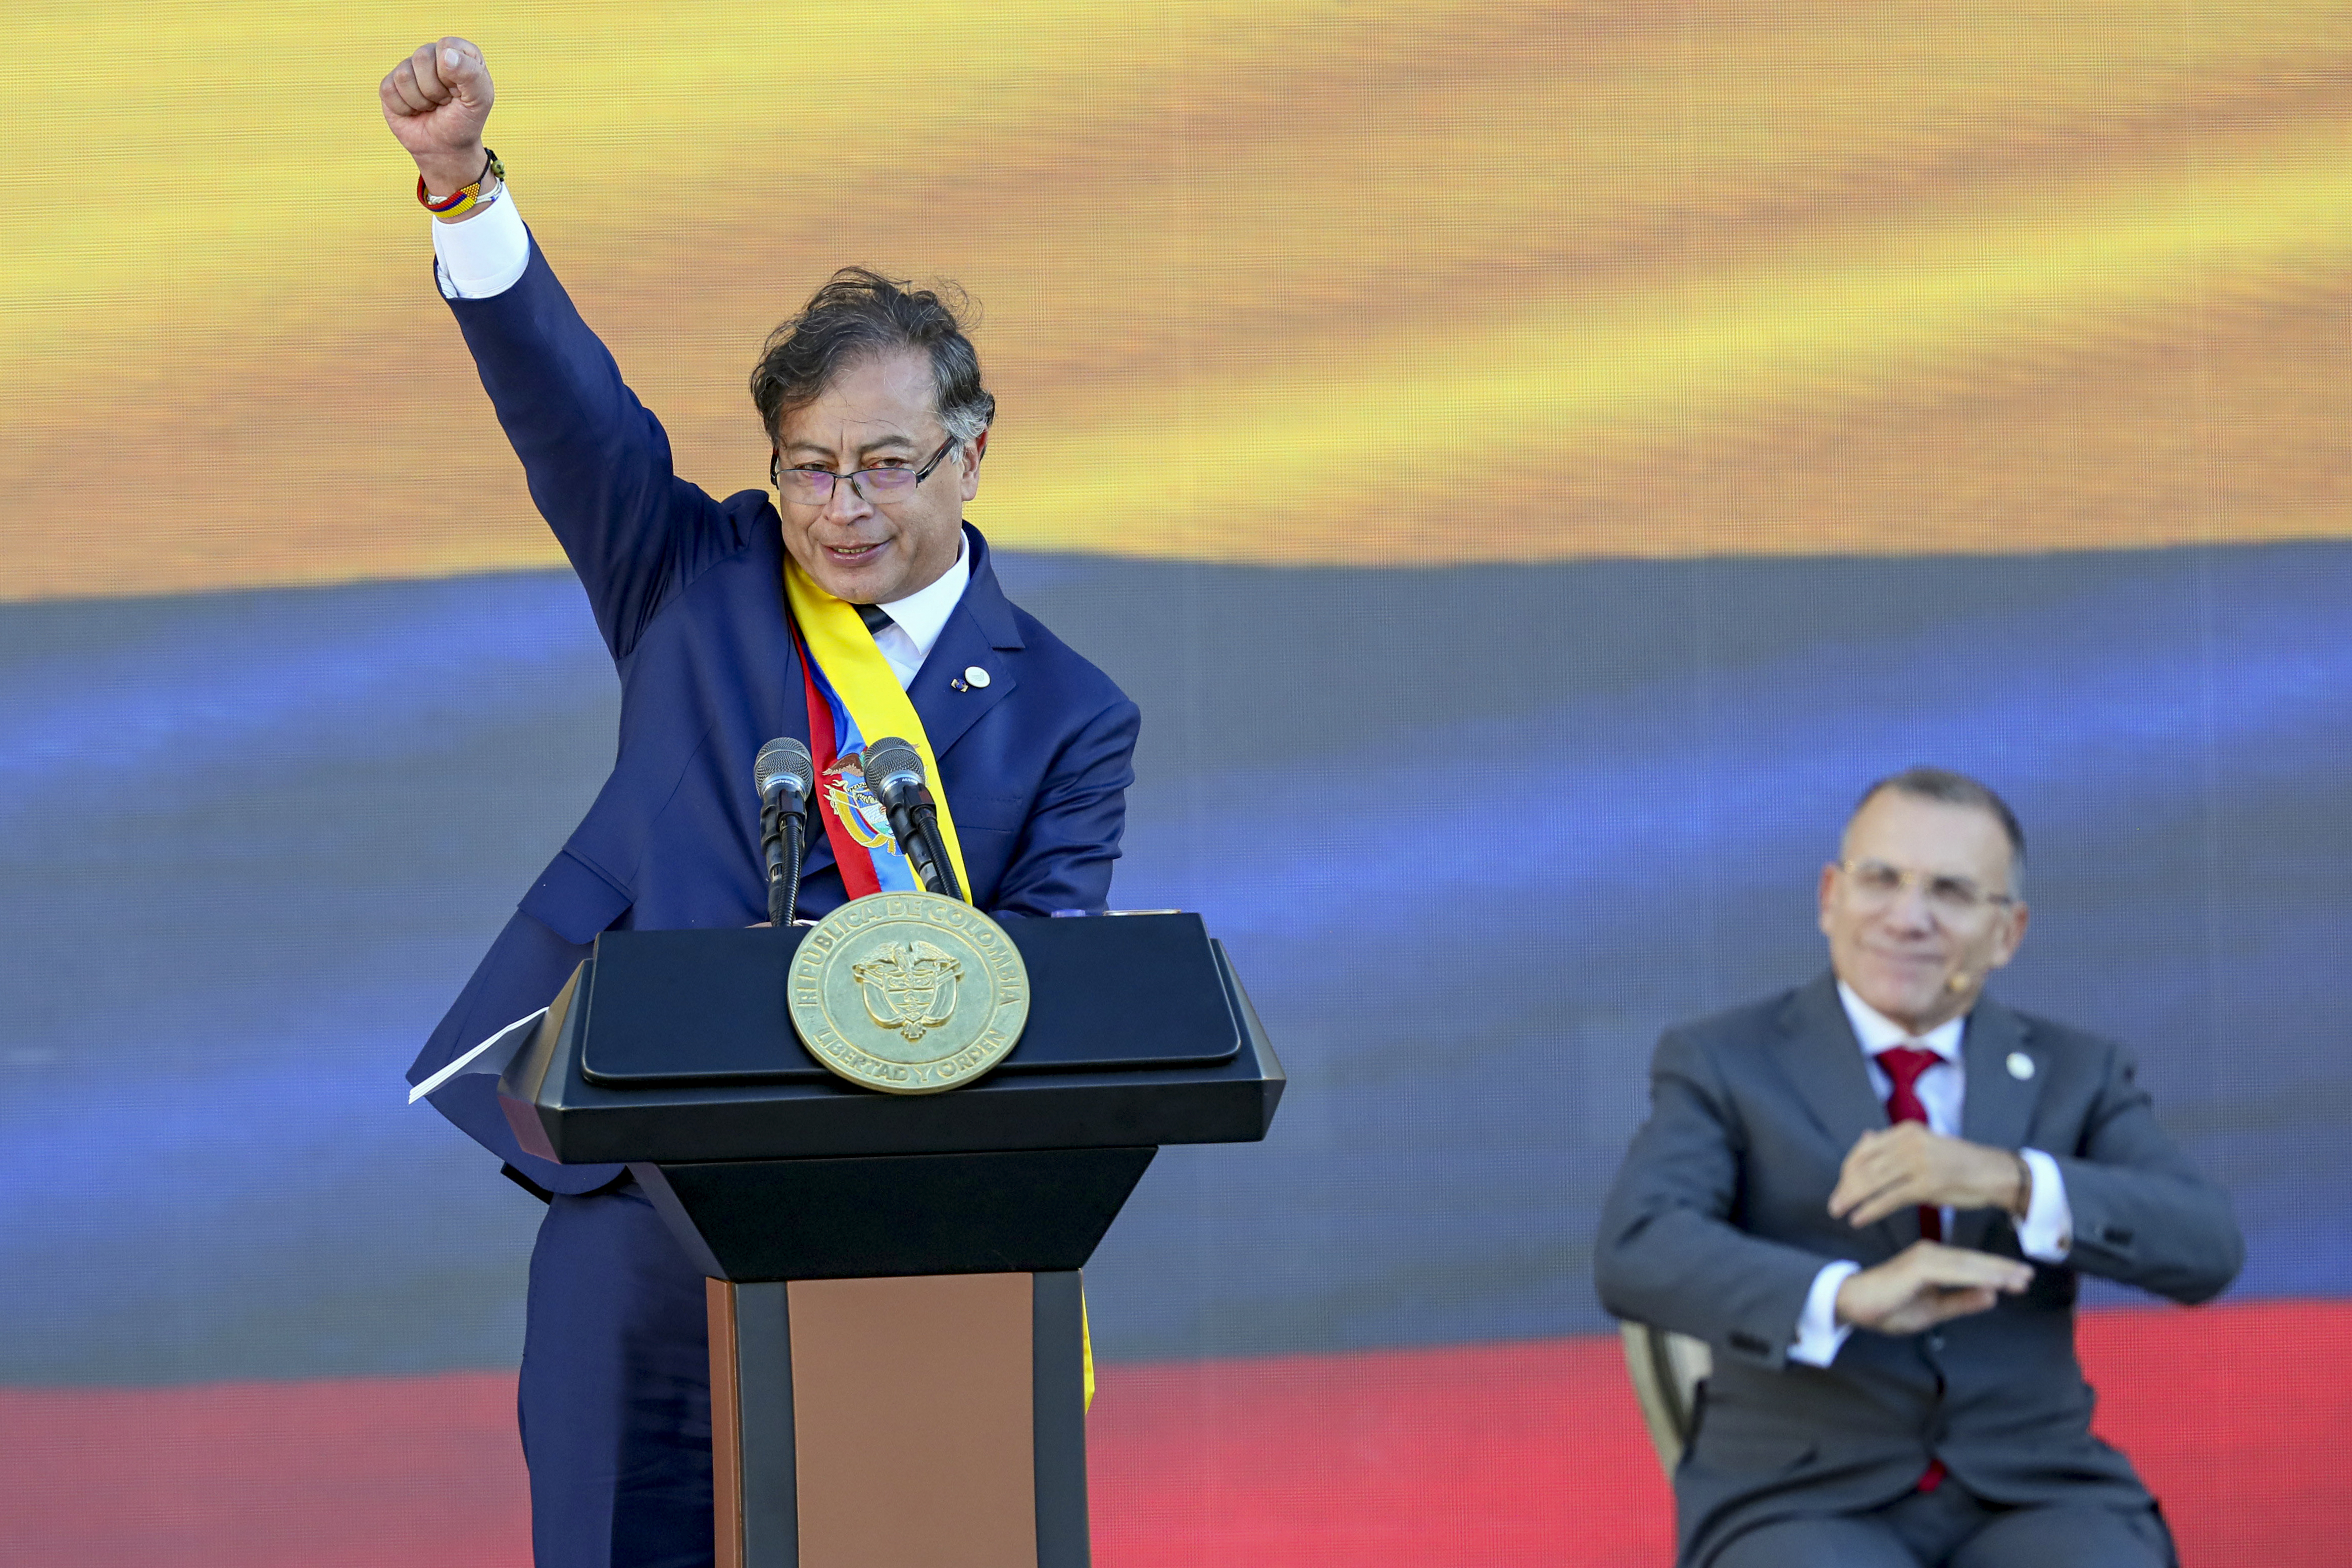 ARCHIVO - El presidente Gustavo Petro levanta el puño al final de su discurso de toma de posesión en Bogotá, Colombia, el 7 de agosto de 2022. (AP Foto/Fernando Vergara, Archivo)